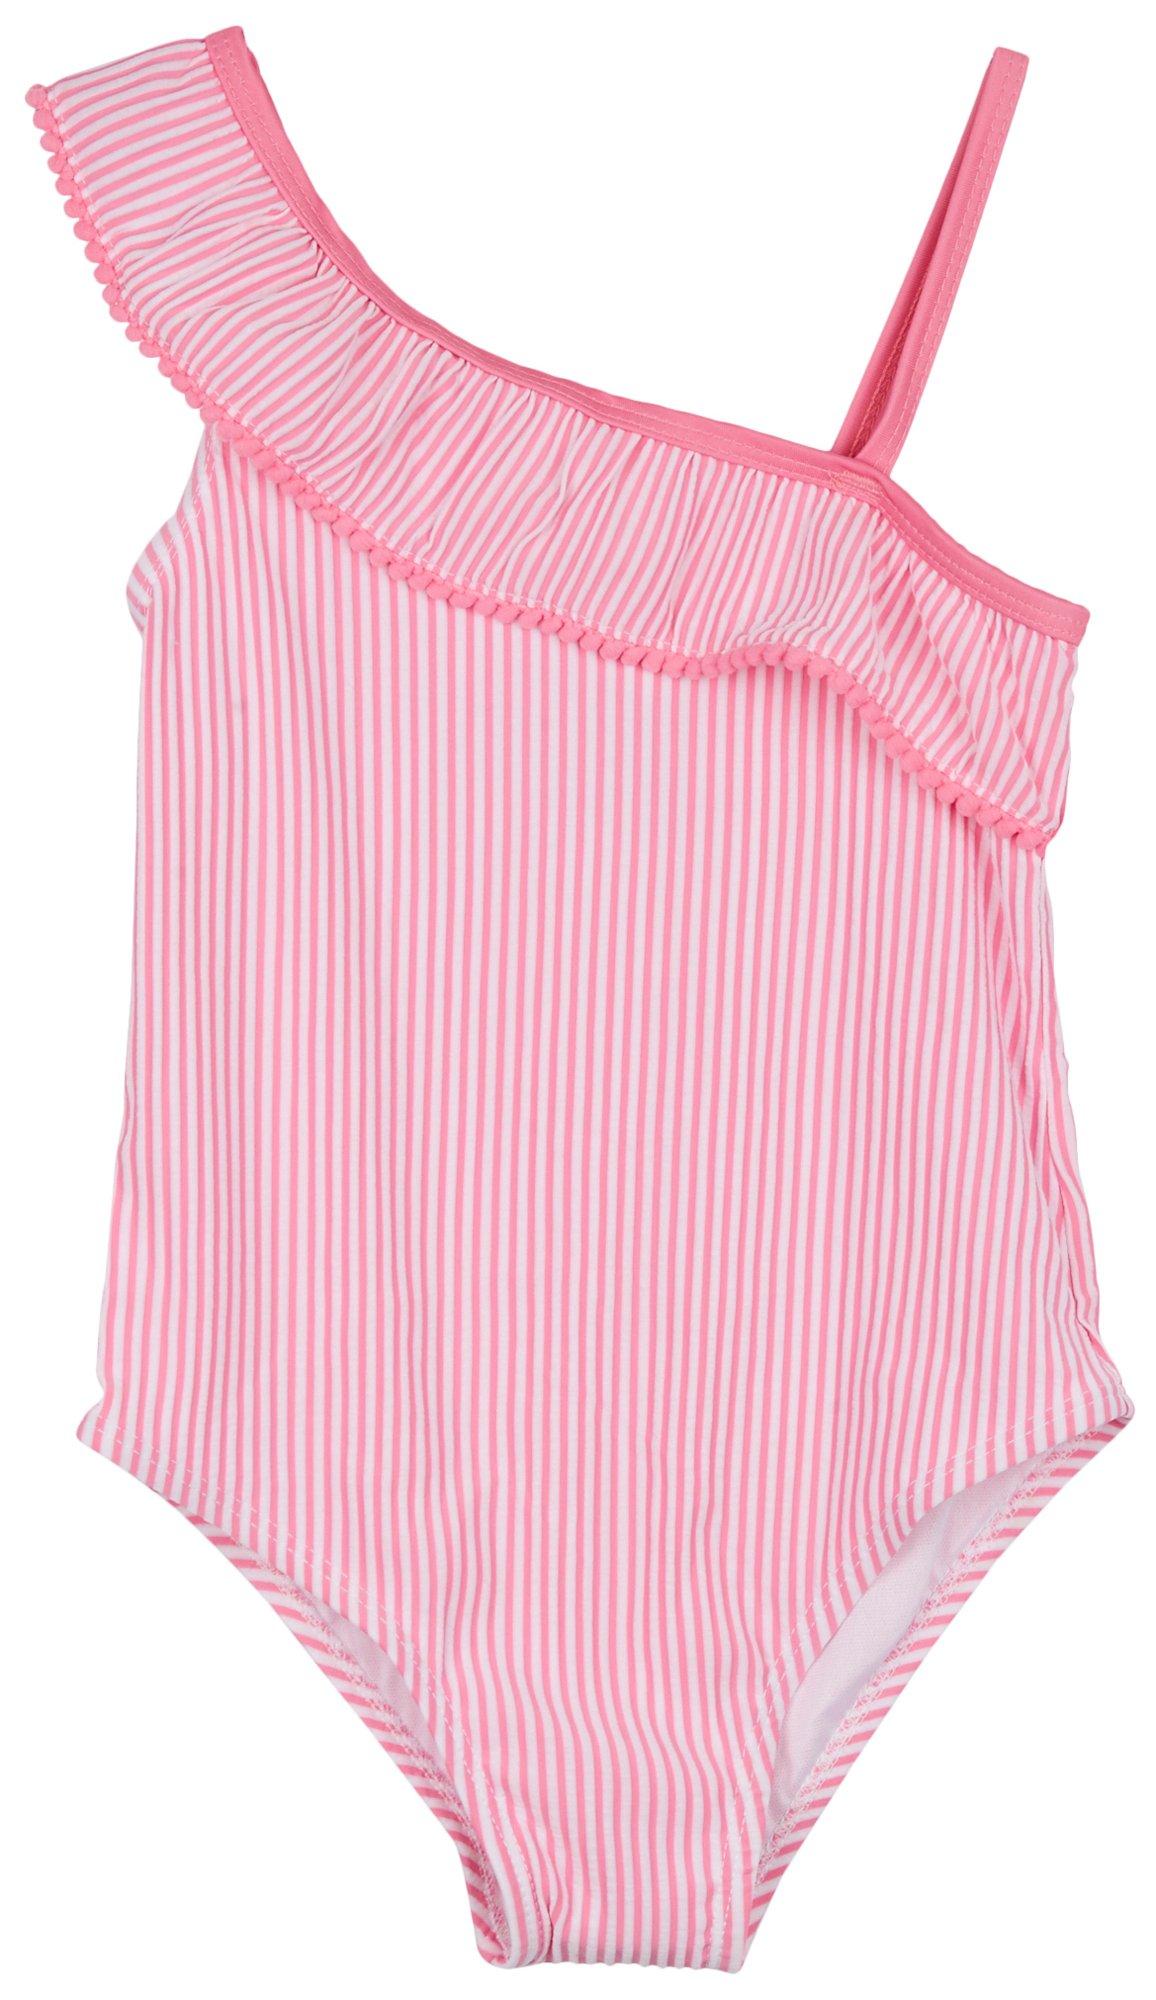 Little Girls 1 Pc. Pink Stripe  Swimsuit